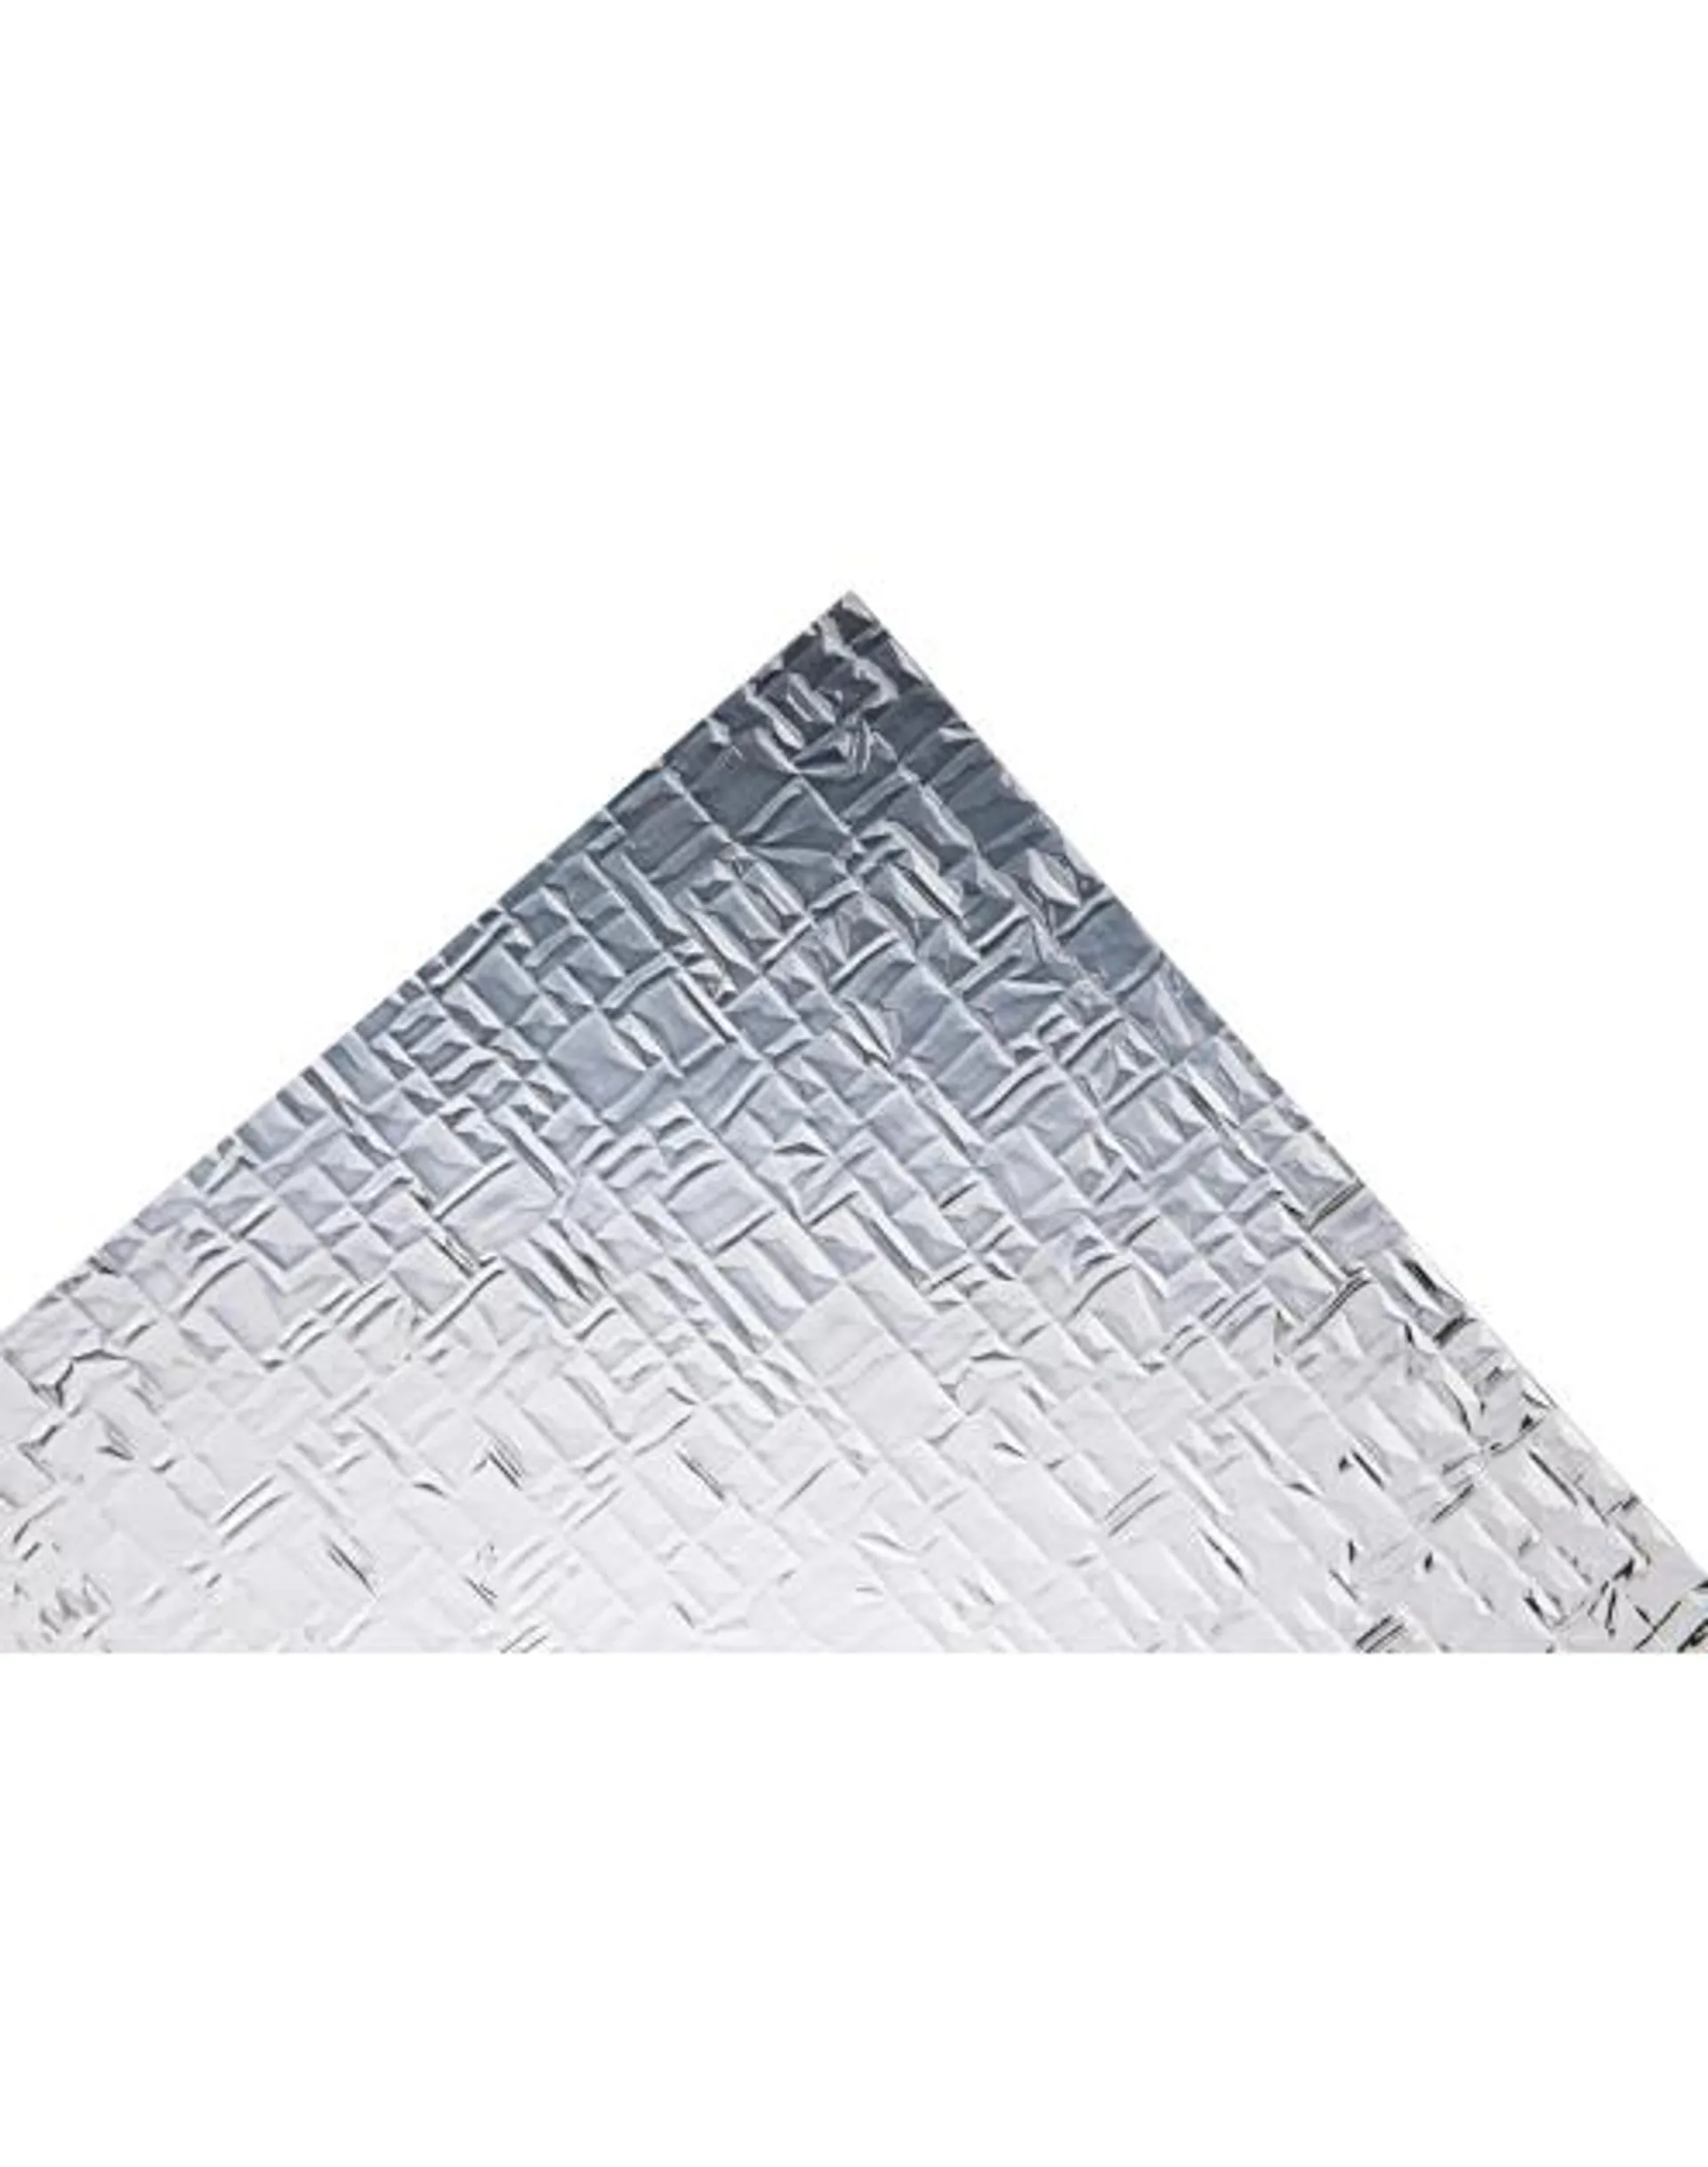 Szkło polistyren grubość 2,3 mm 120x64 cm struktura pyramid przezroczysta SCALA